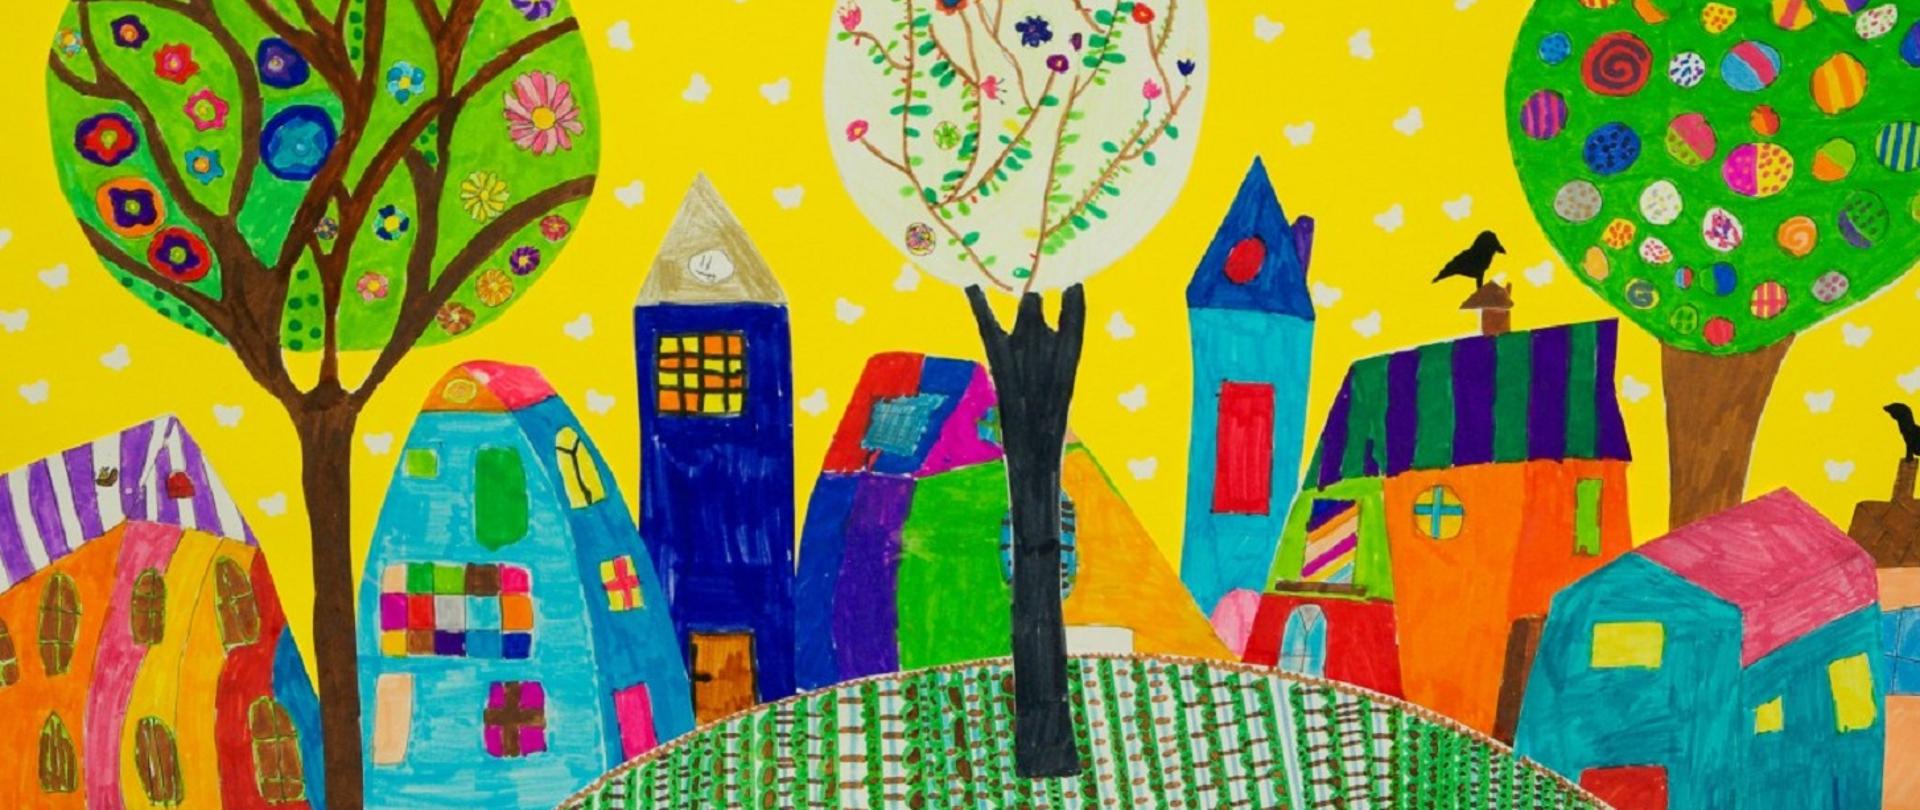 kolorowy rysunek przedstawiający dziecięcą wizję miasta